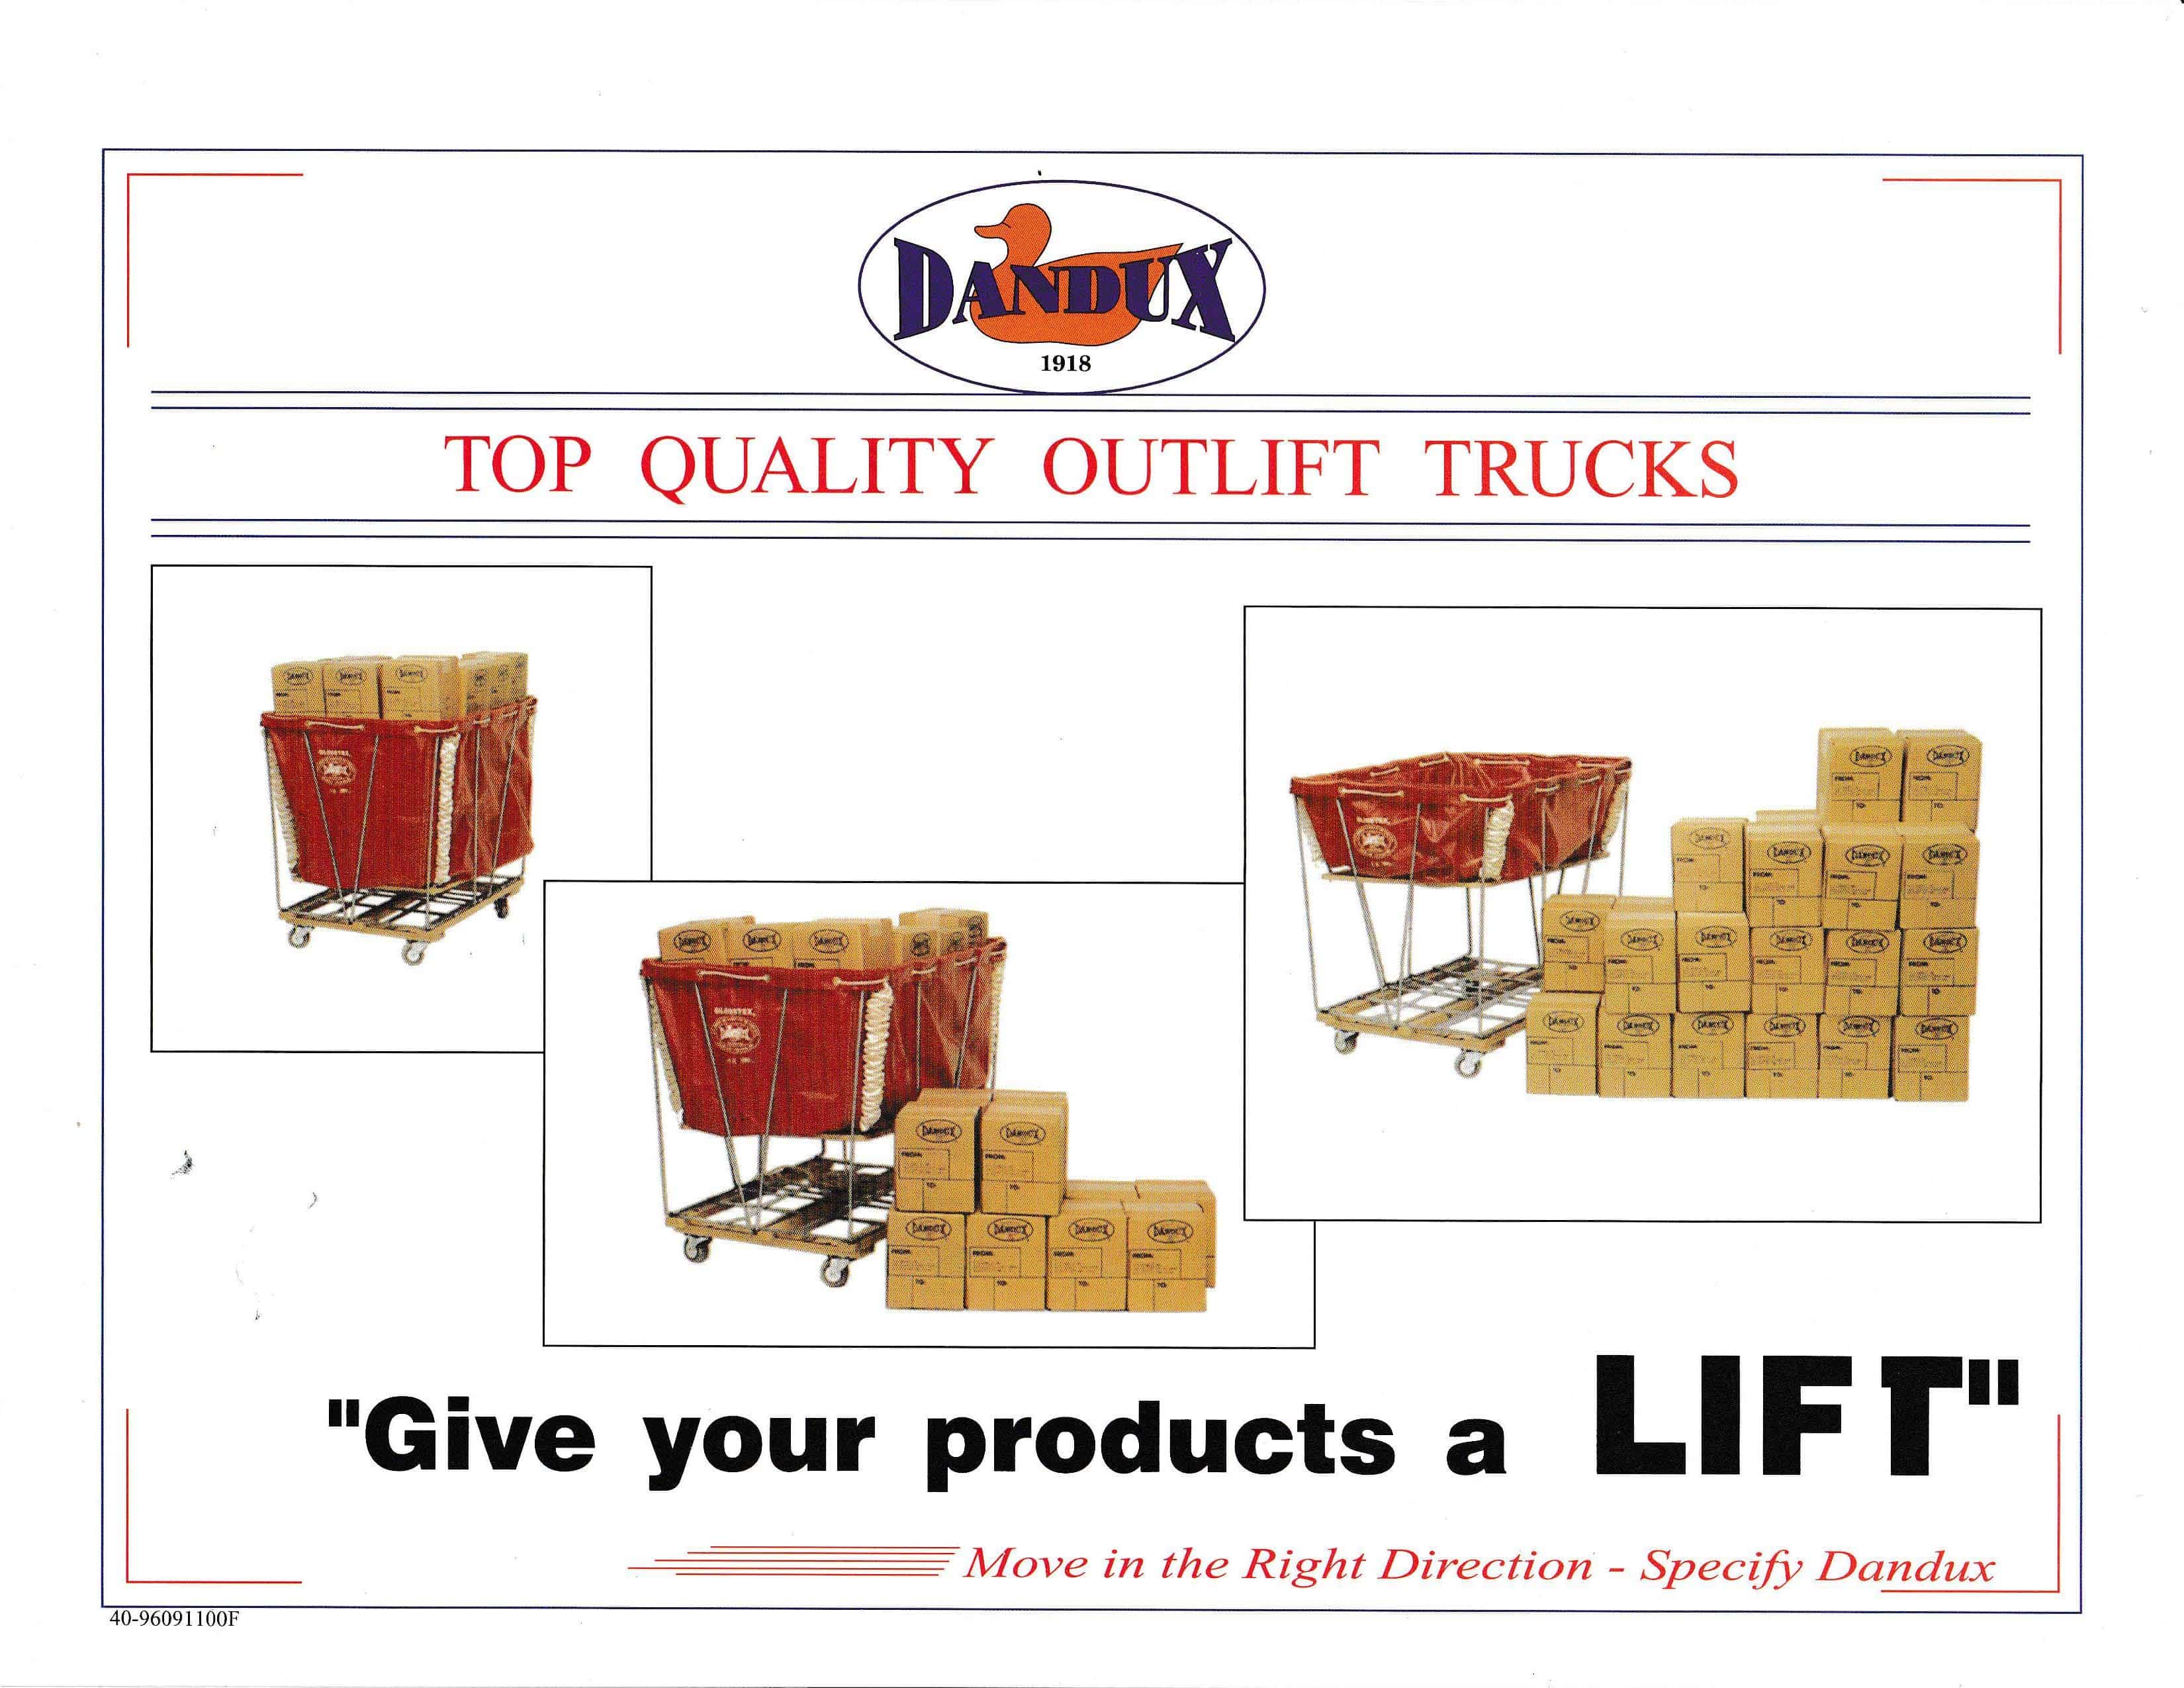 DANDUX Outlift Trucks